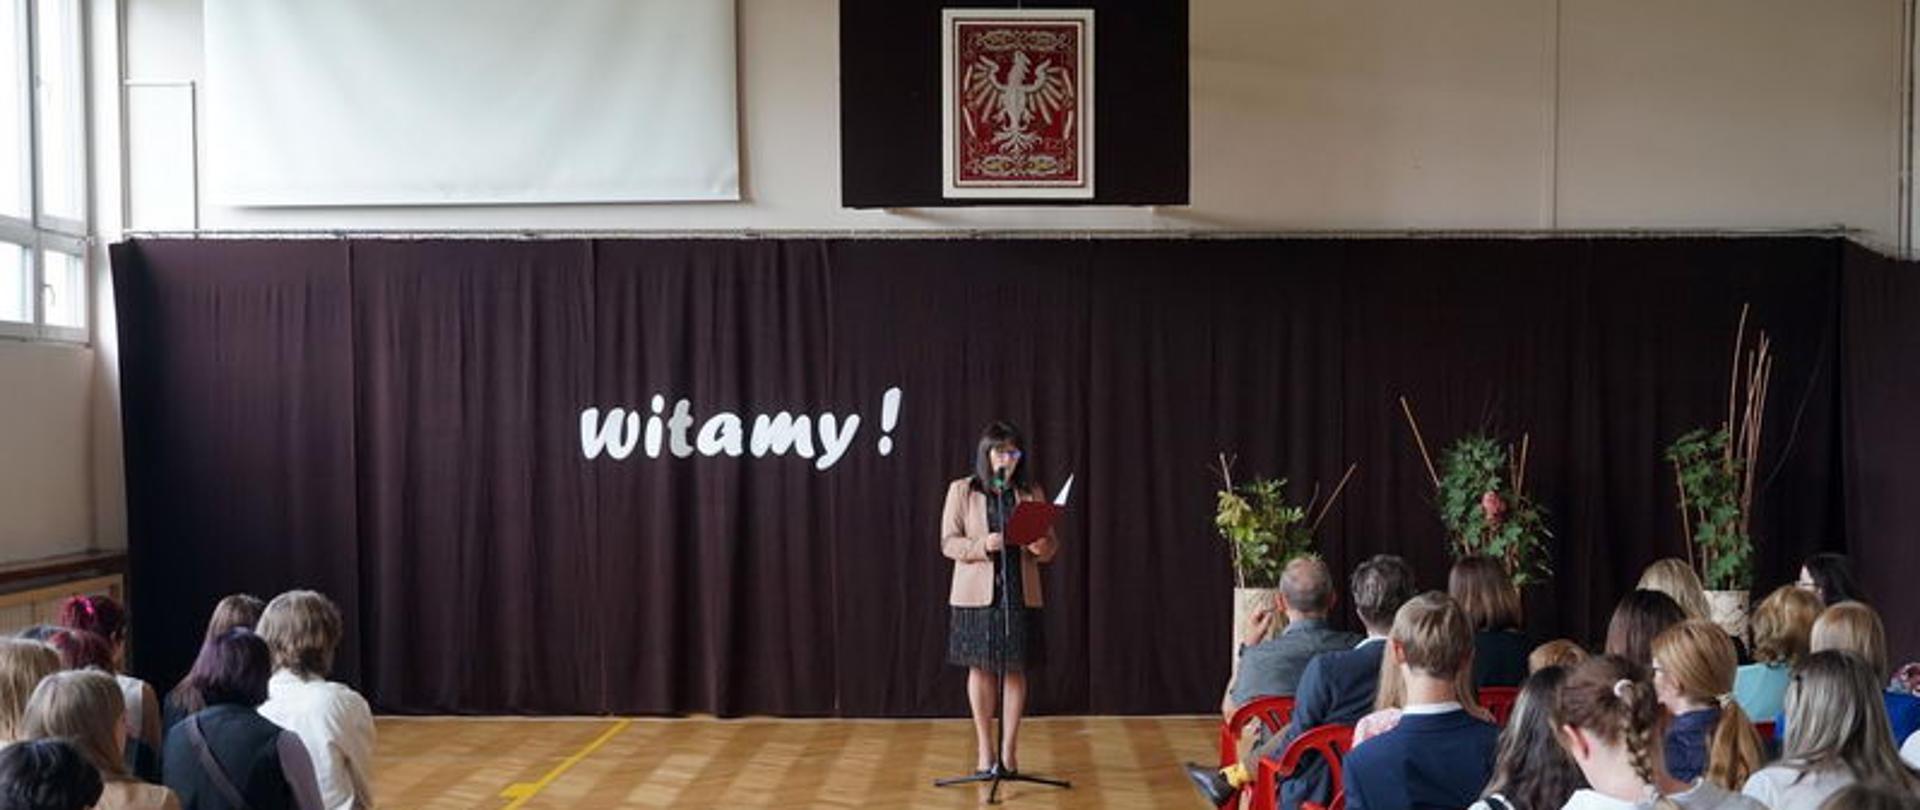 Zdjęcie przedstawia uczniów i dyrekcję PLSP w Kielcach na sali gimnastycznej. Pani Dyrektor przemawia przy mikrofonie. W tle widnieje napis "witamy" w kolorze białym na bordowym tle.